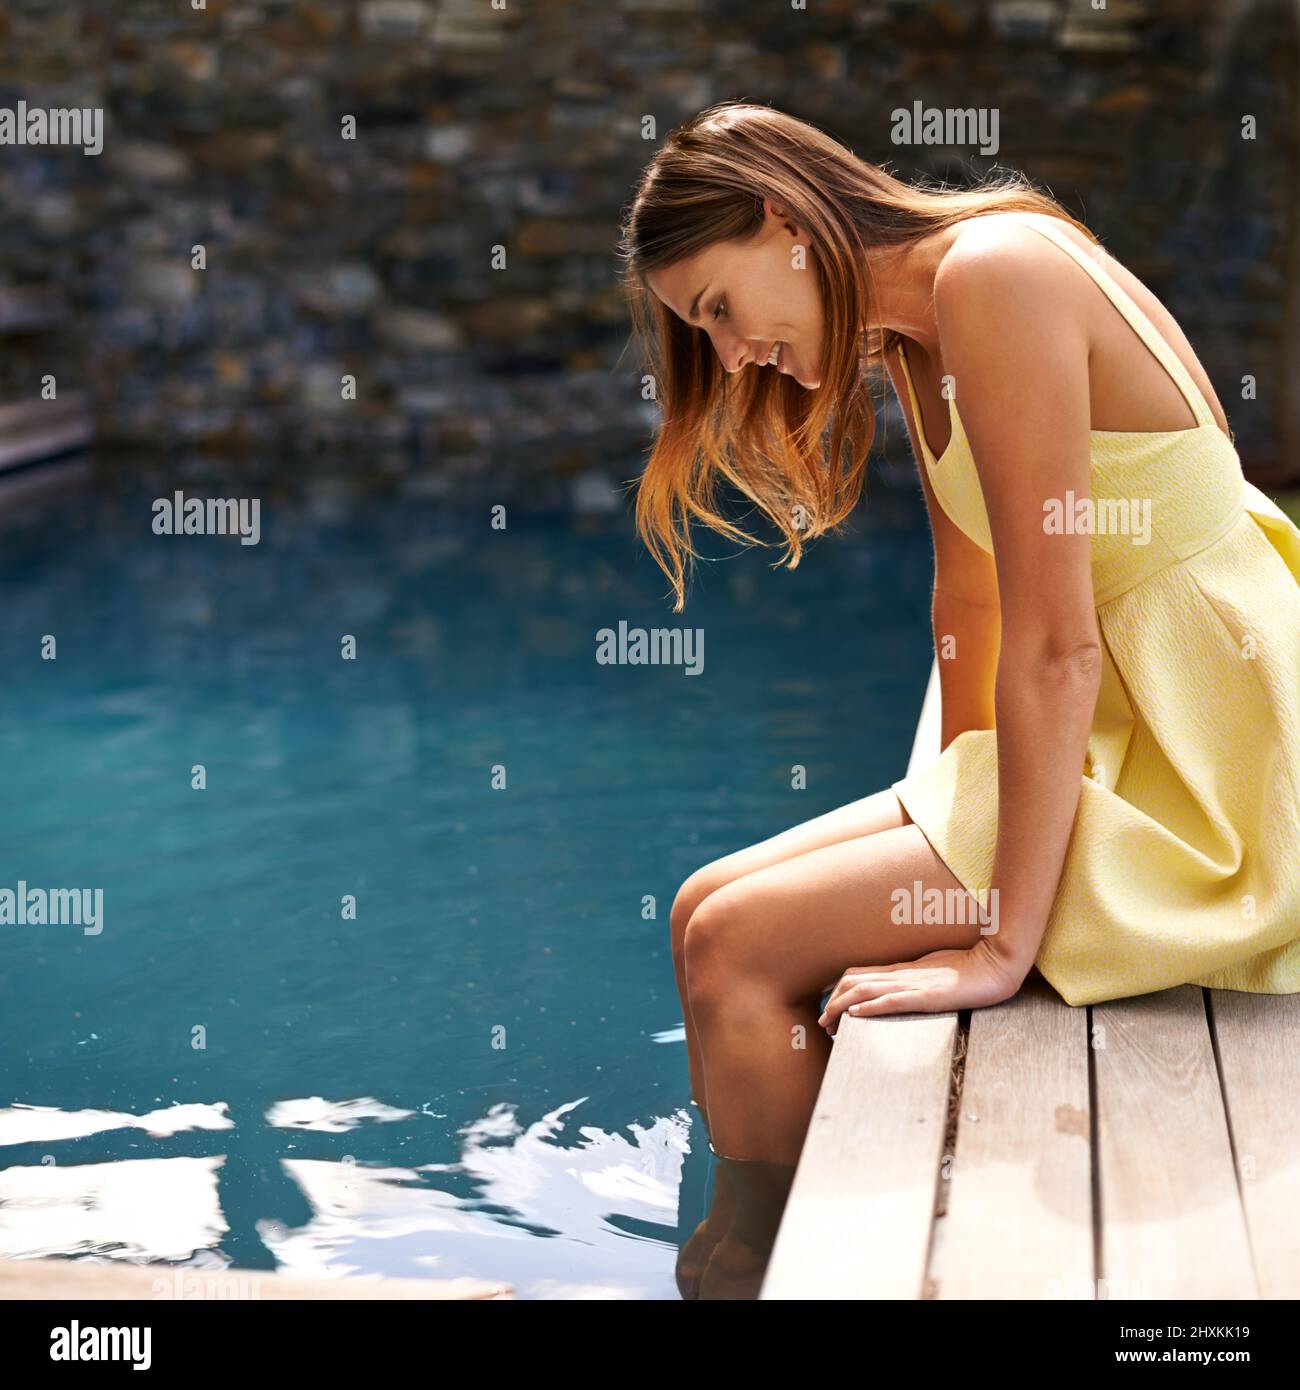 Piaceri semplici presso la piscina. Bella donna in un abito giallo in piscina. Foto Stock